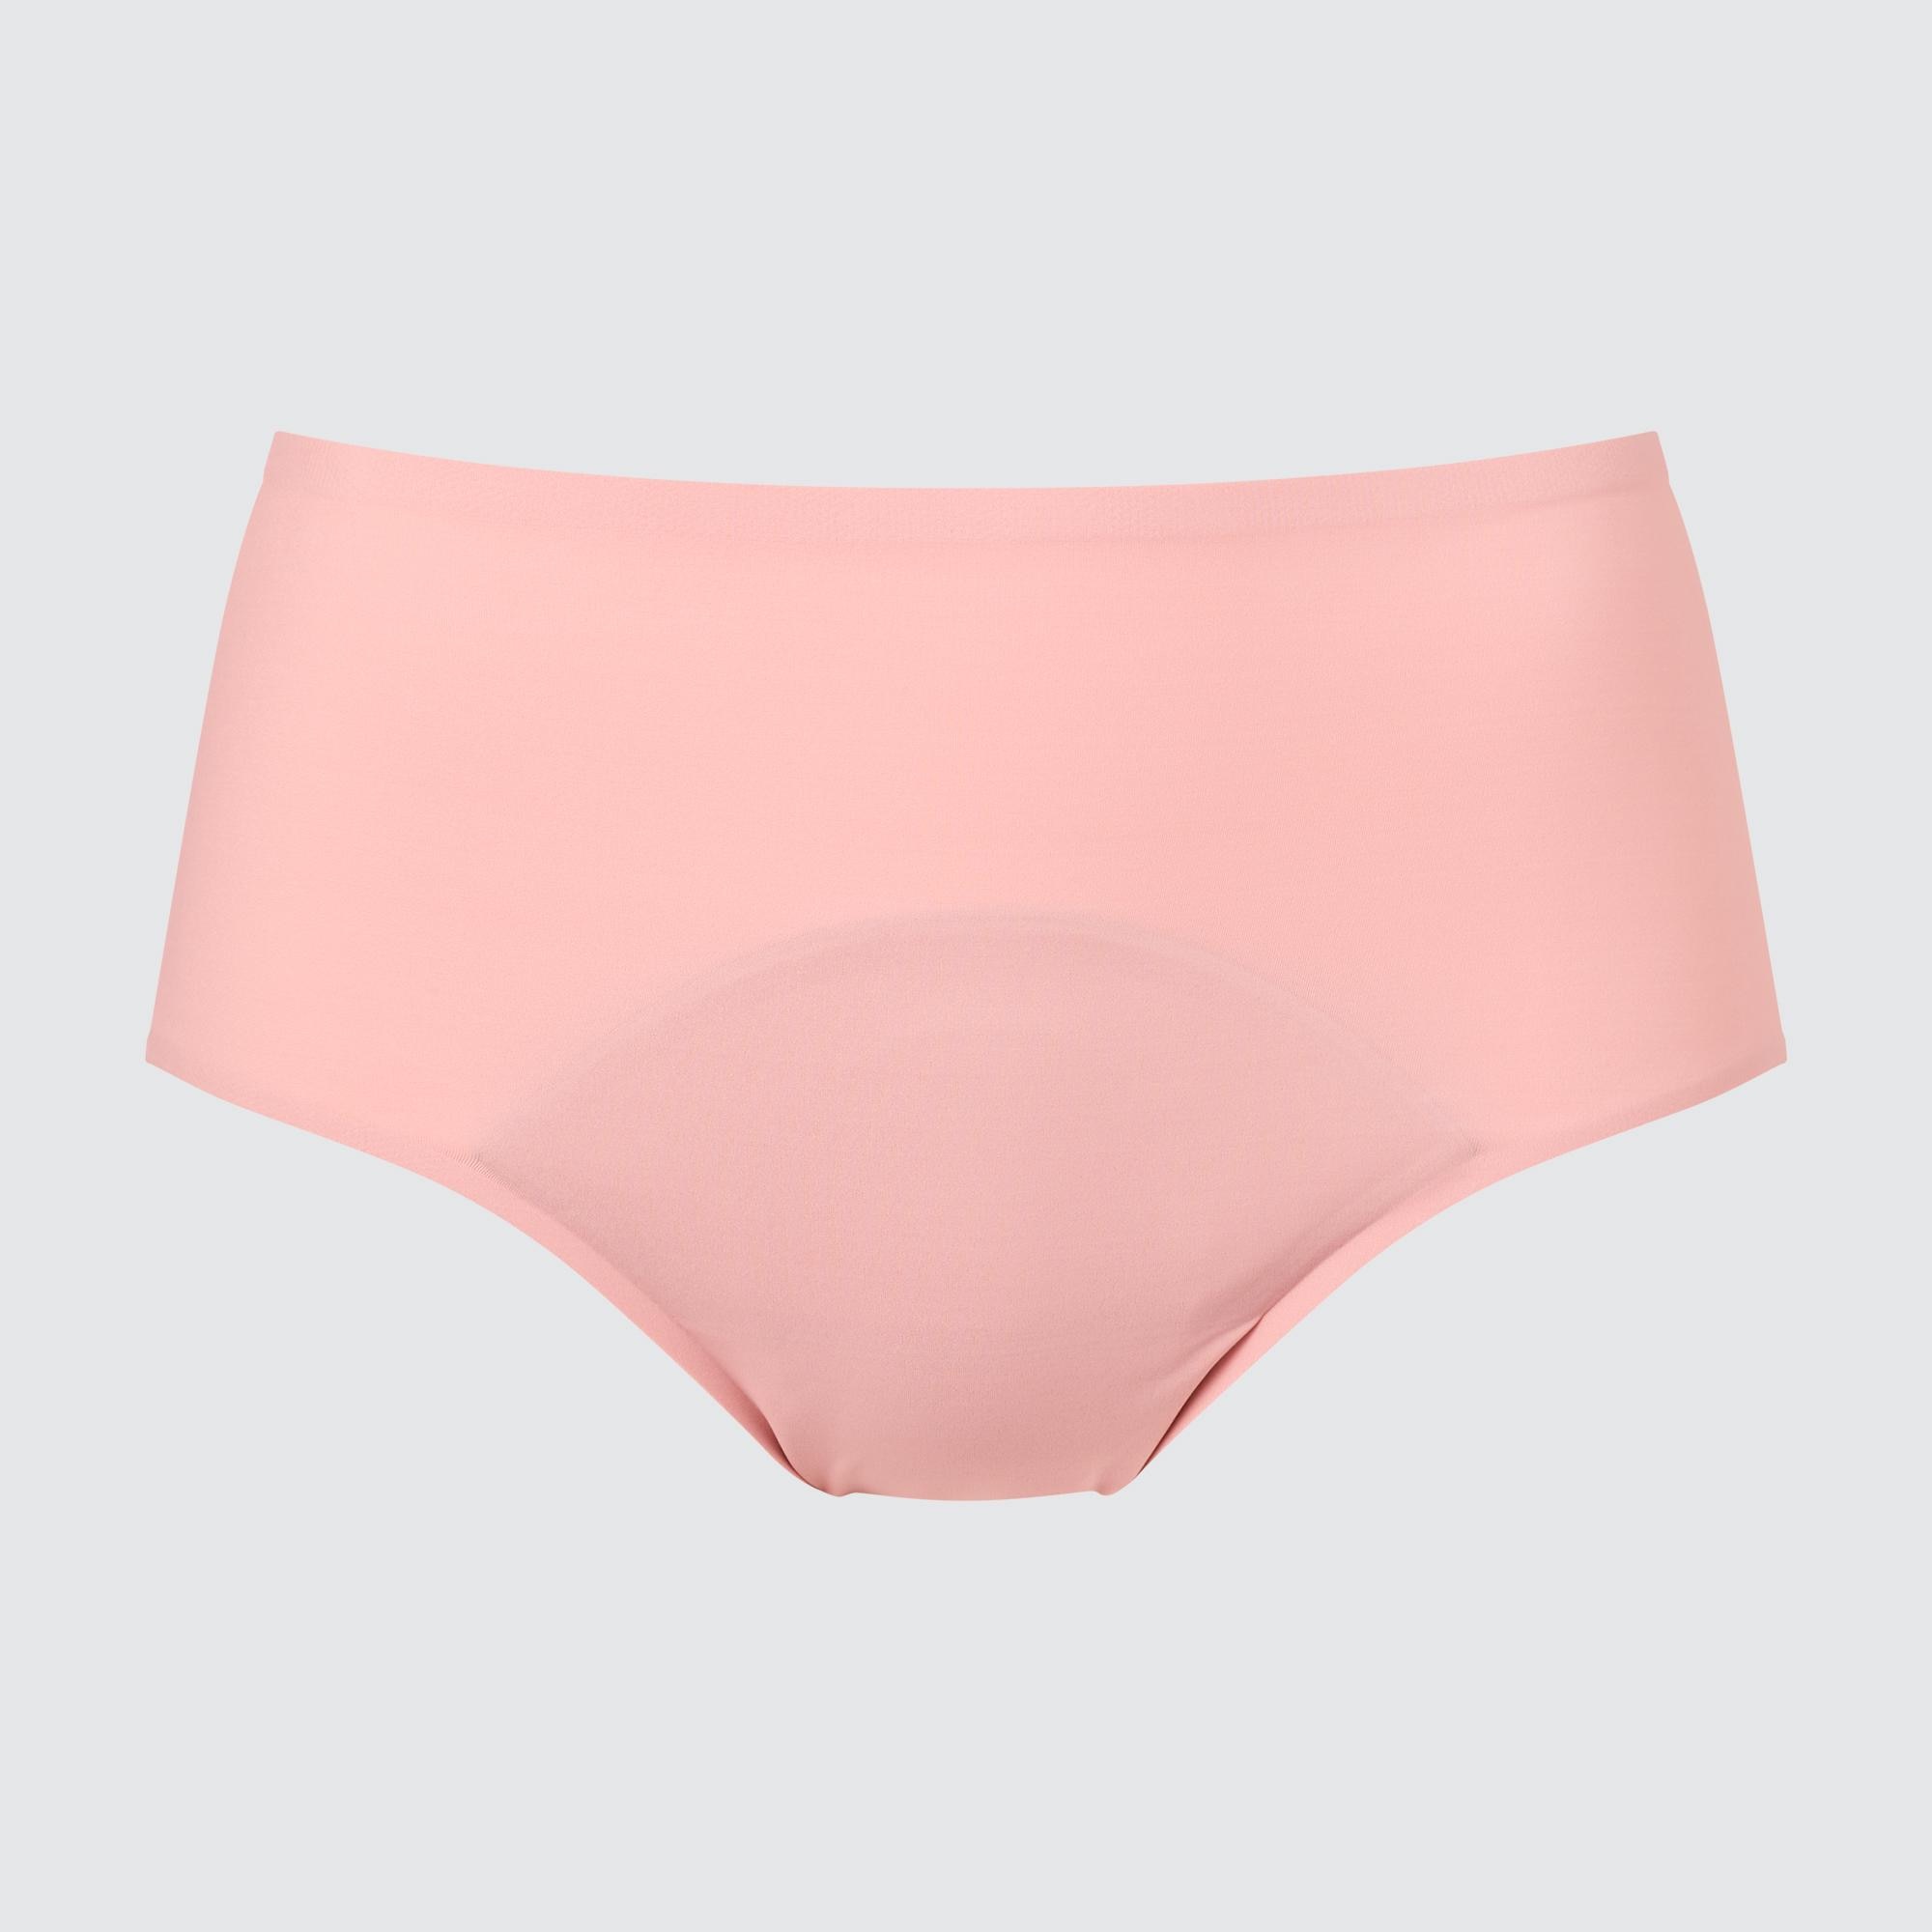 Uniqlo Clothing - Jones New York Ladies Underwear XS